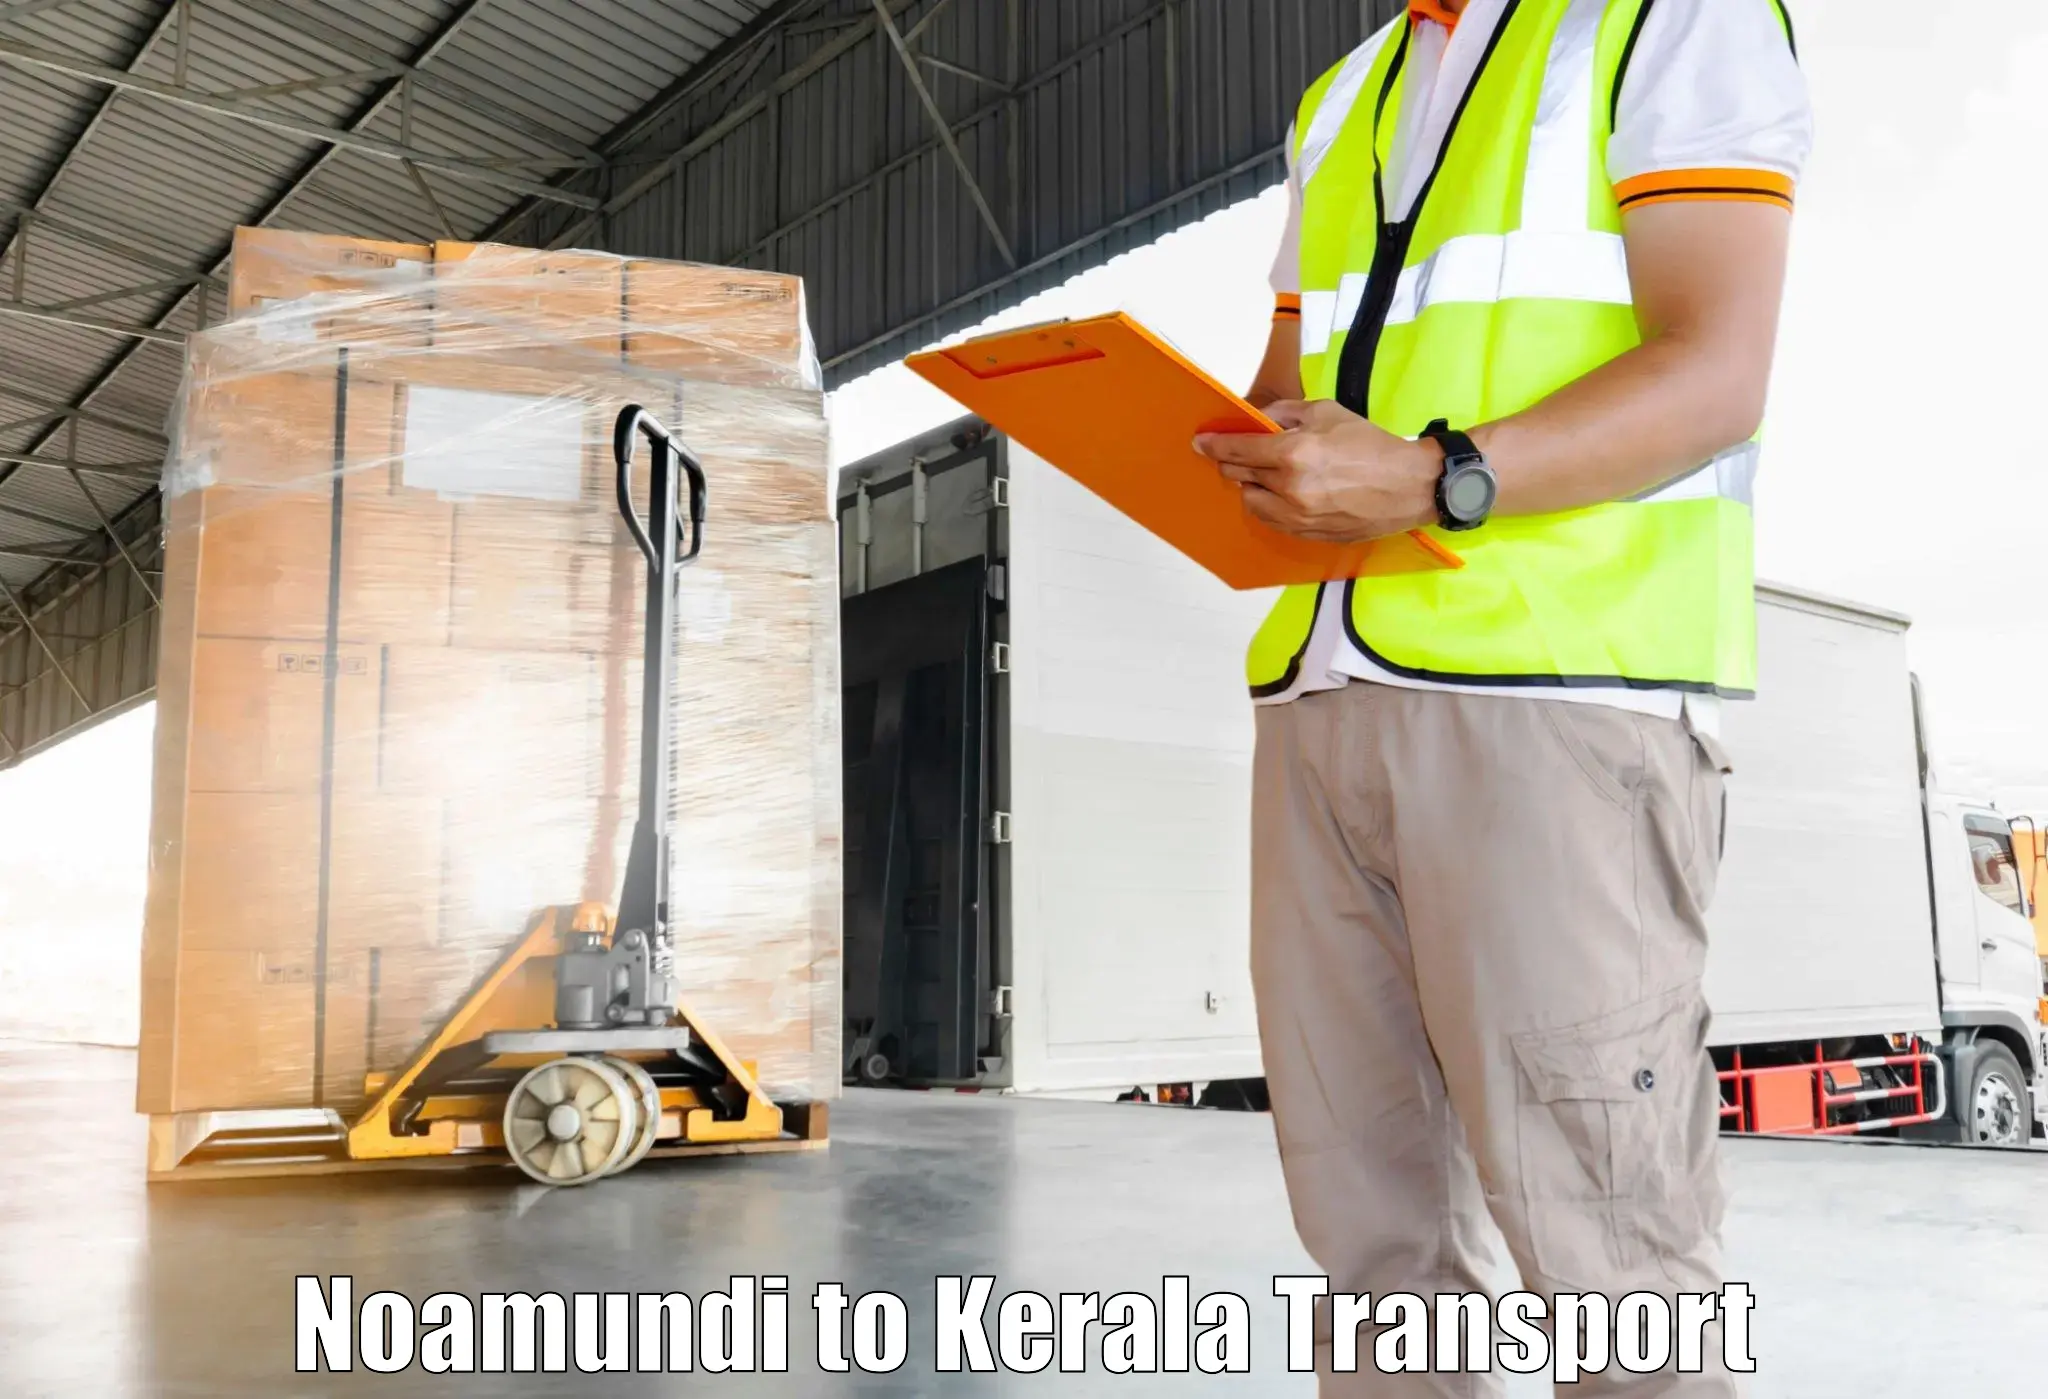 Daily parcel service transport Noamundi to Kozhikode